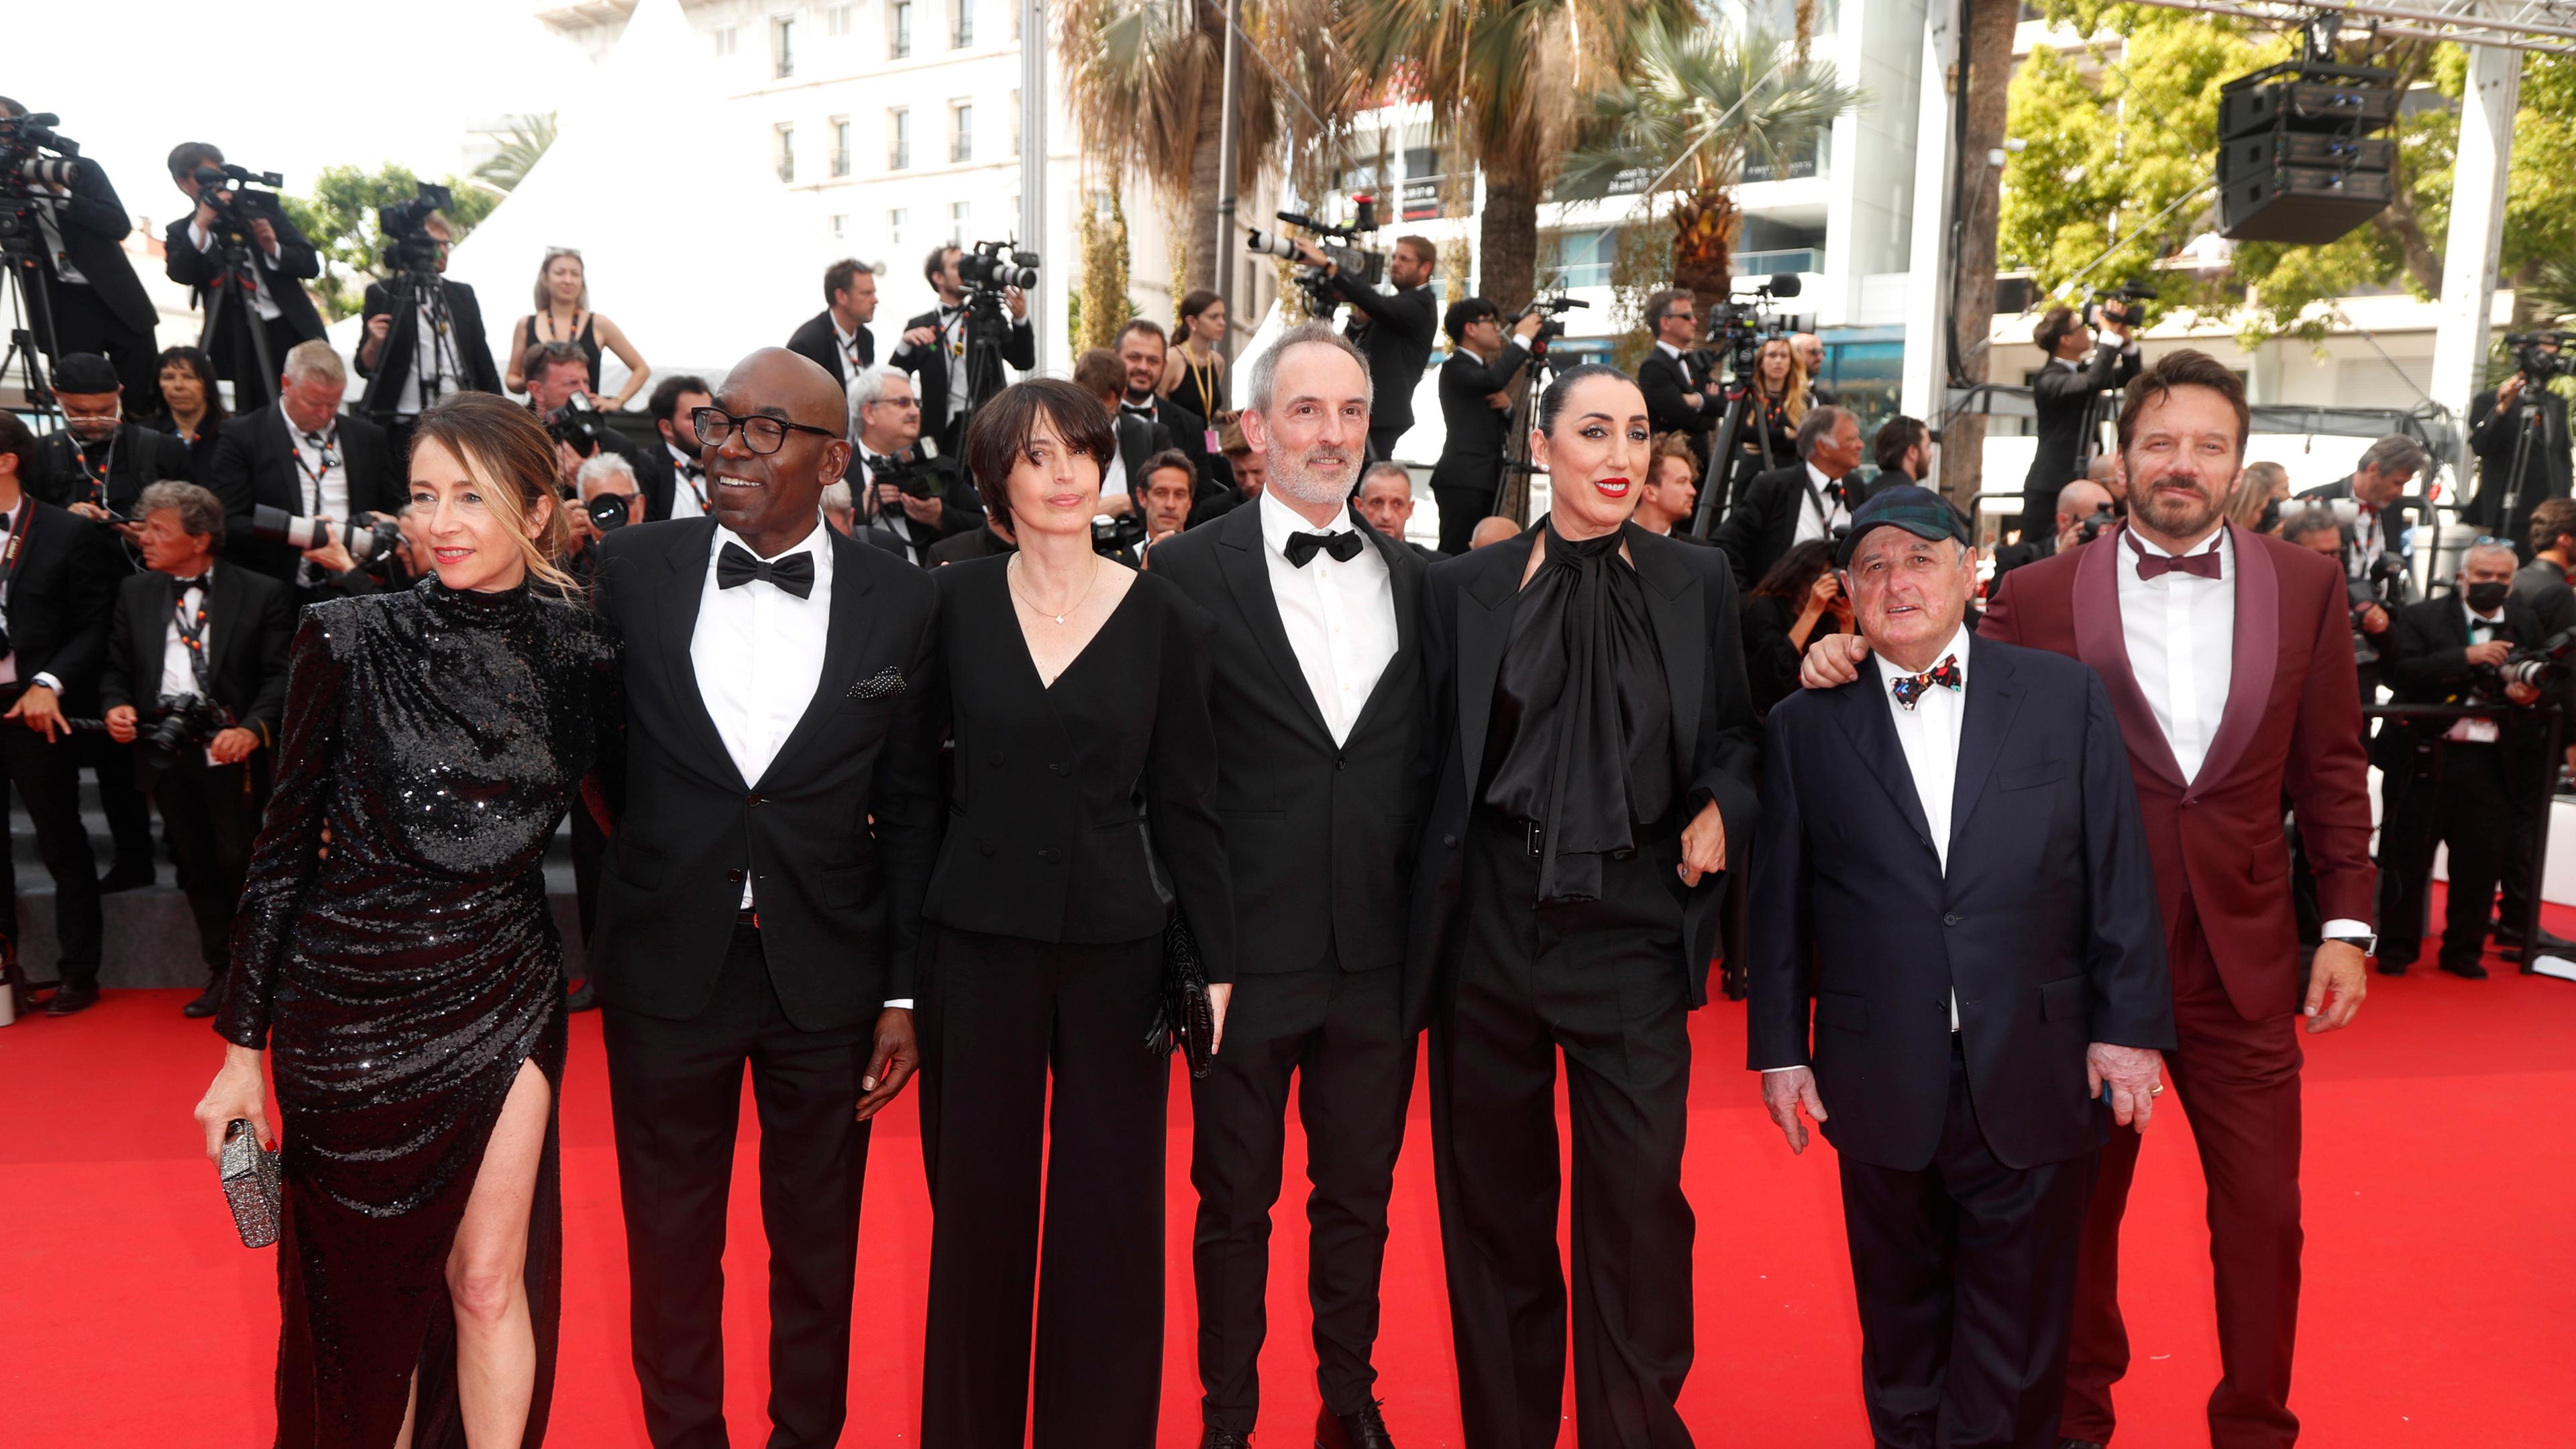 23.05.2022, Cannes, France: Die Jury des Cannes Filmfestival wird auf dem roten Teppich fotografiert.